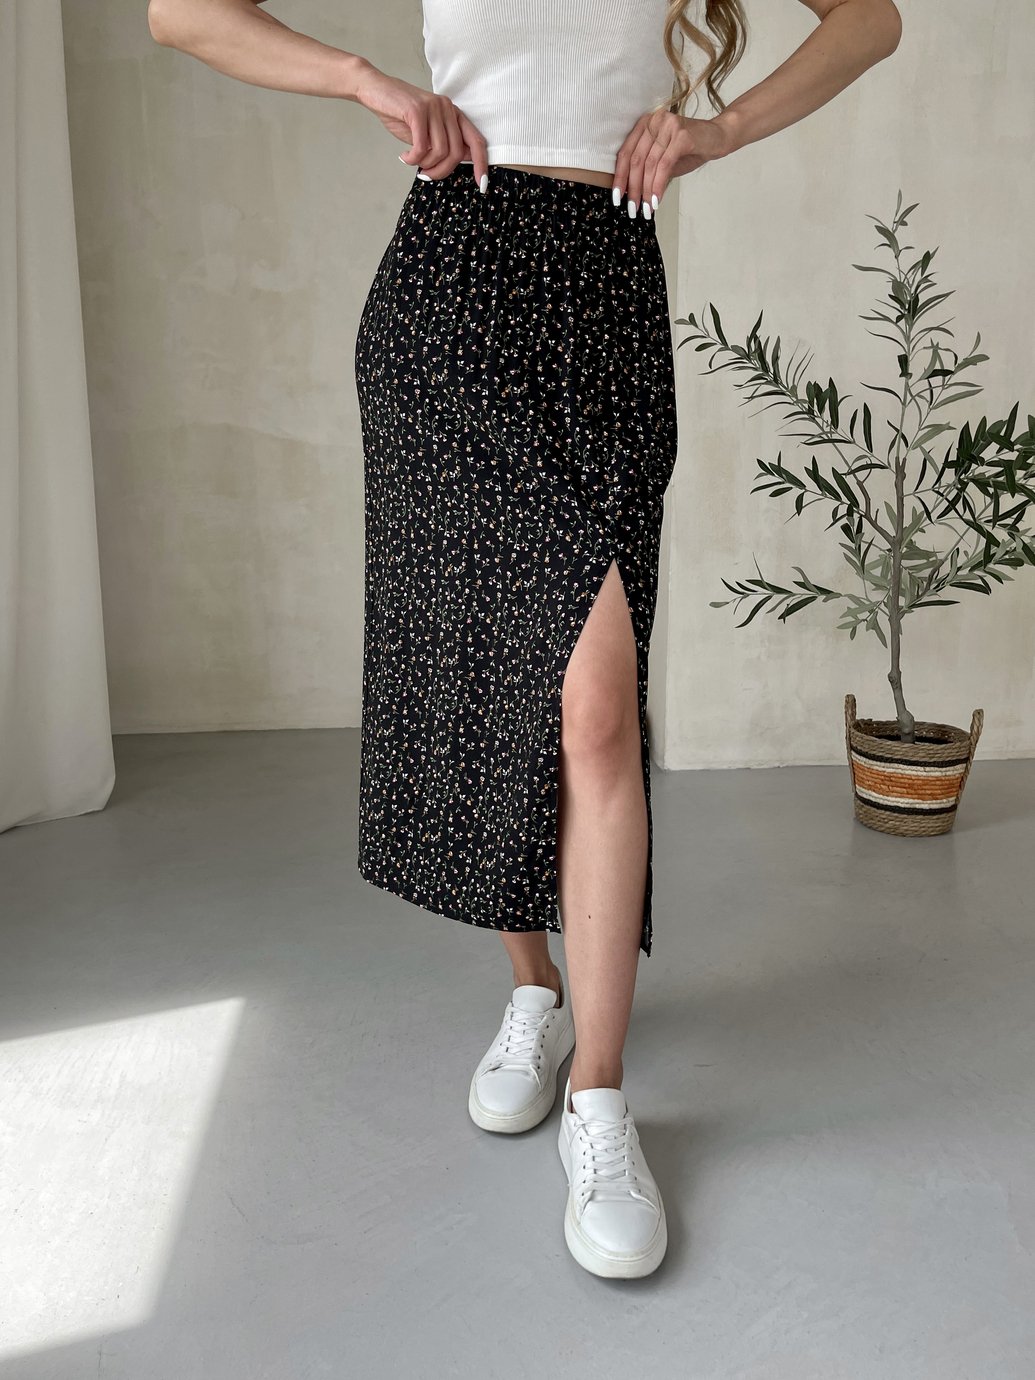 Купить Длинная женская юбка ниже колена с размером в цветочек Merlini Равенна 400000121, размер 42-44 (S-M) в интернет-магазине